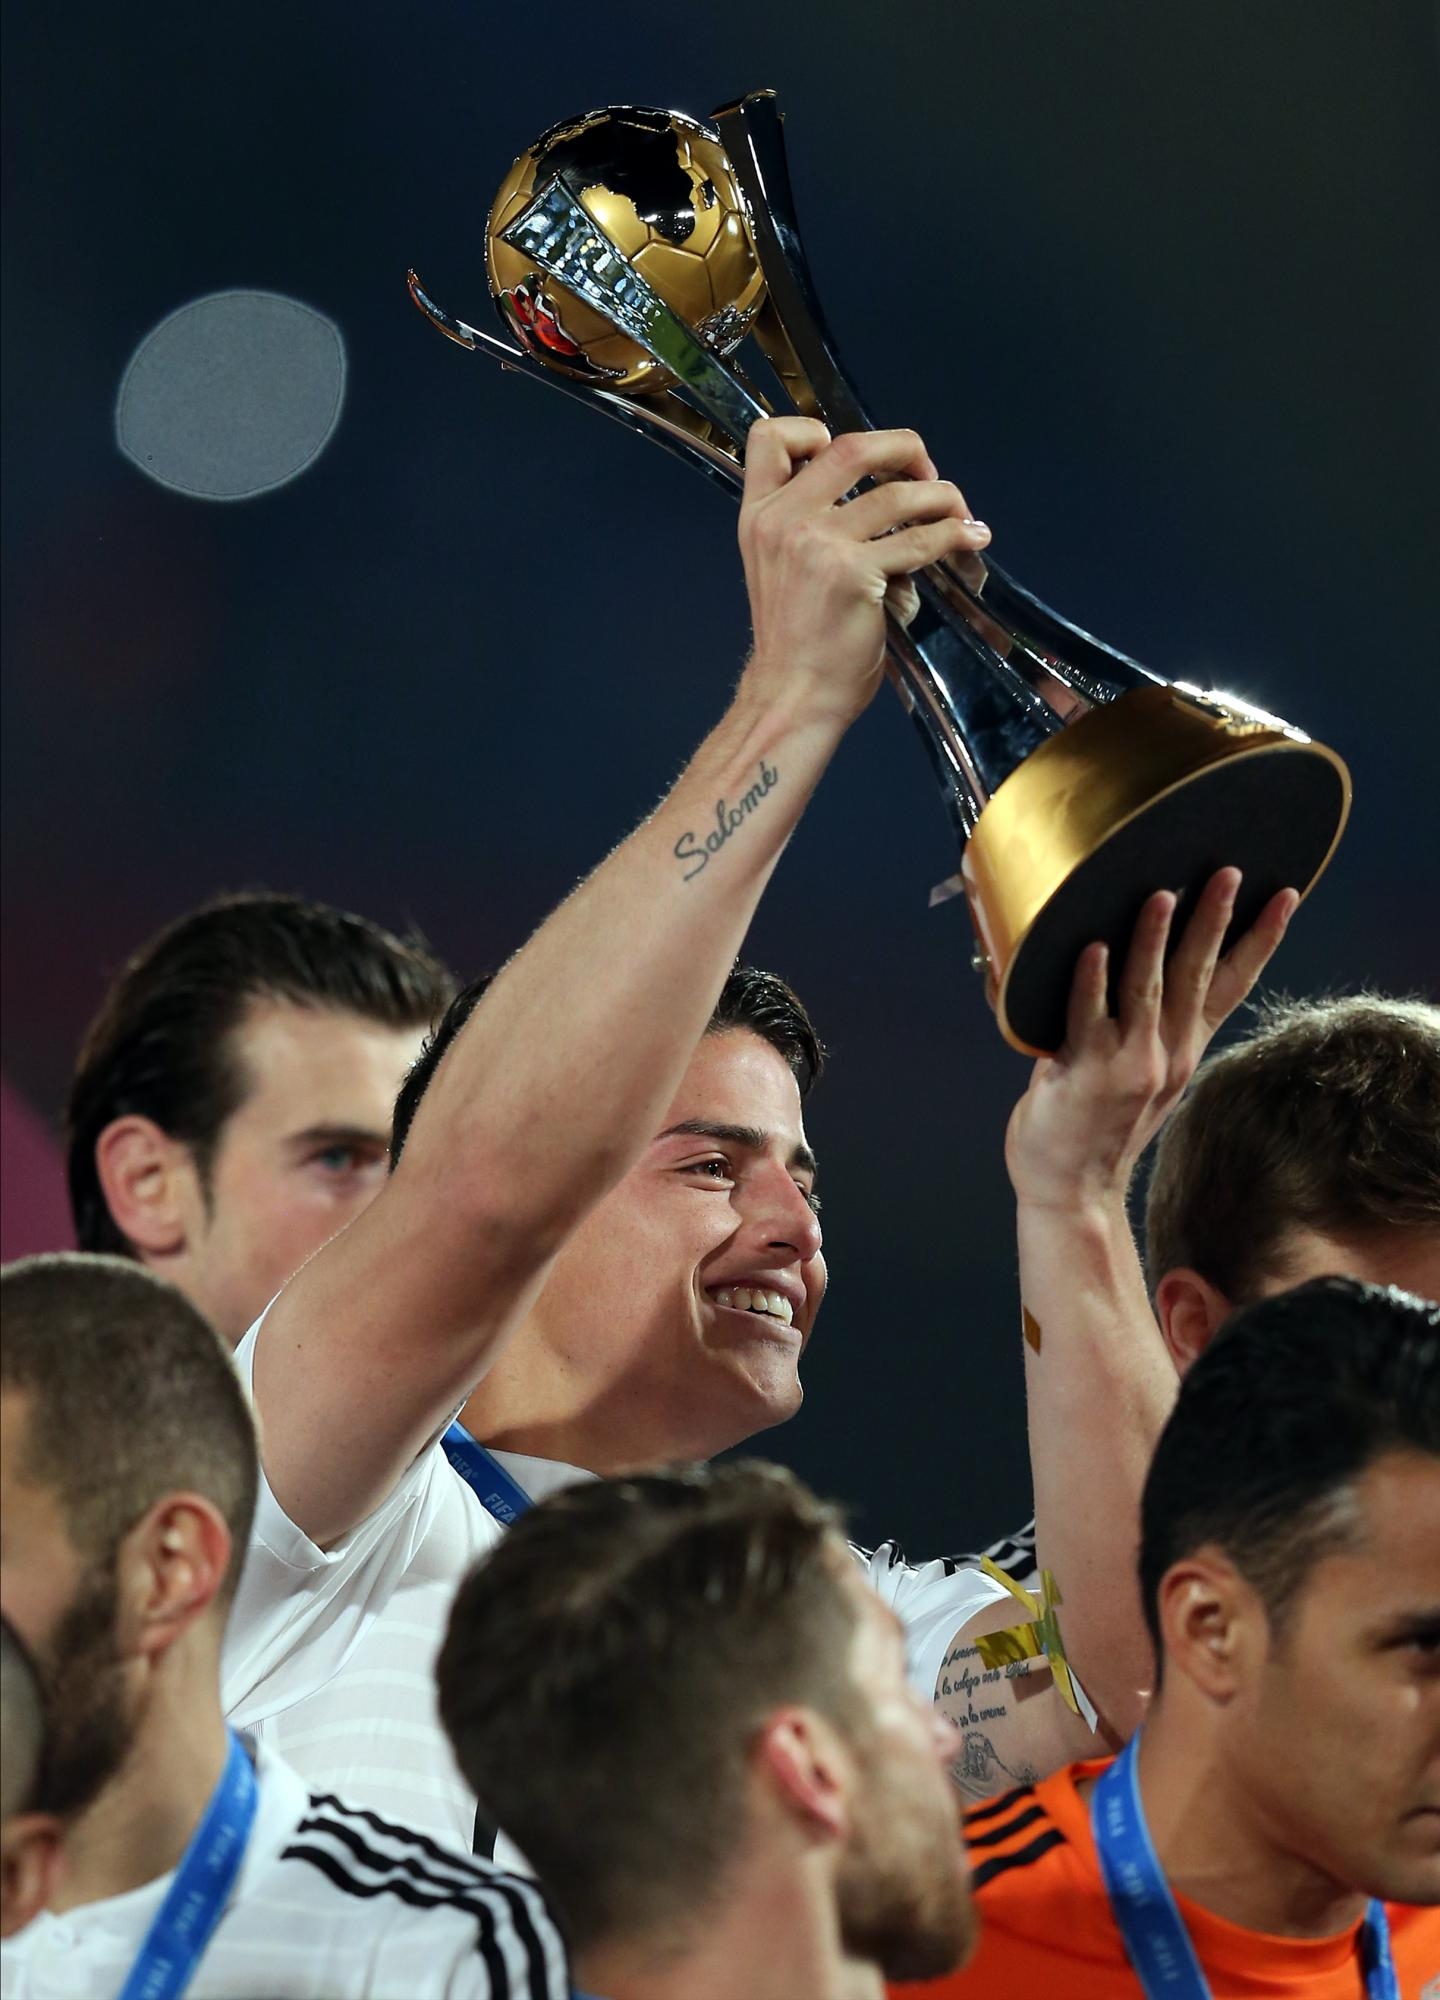 Кубки футбола фото. Хамес Родригес с Кубком. Хамес Родригес трофей см 2014.